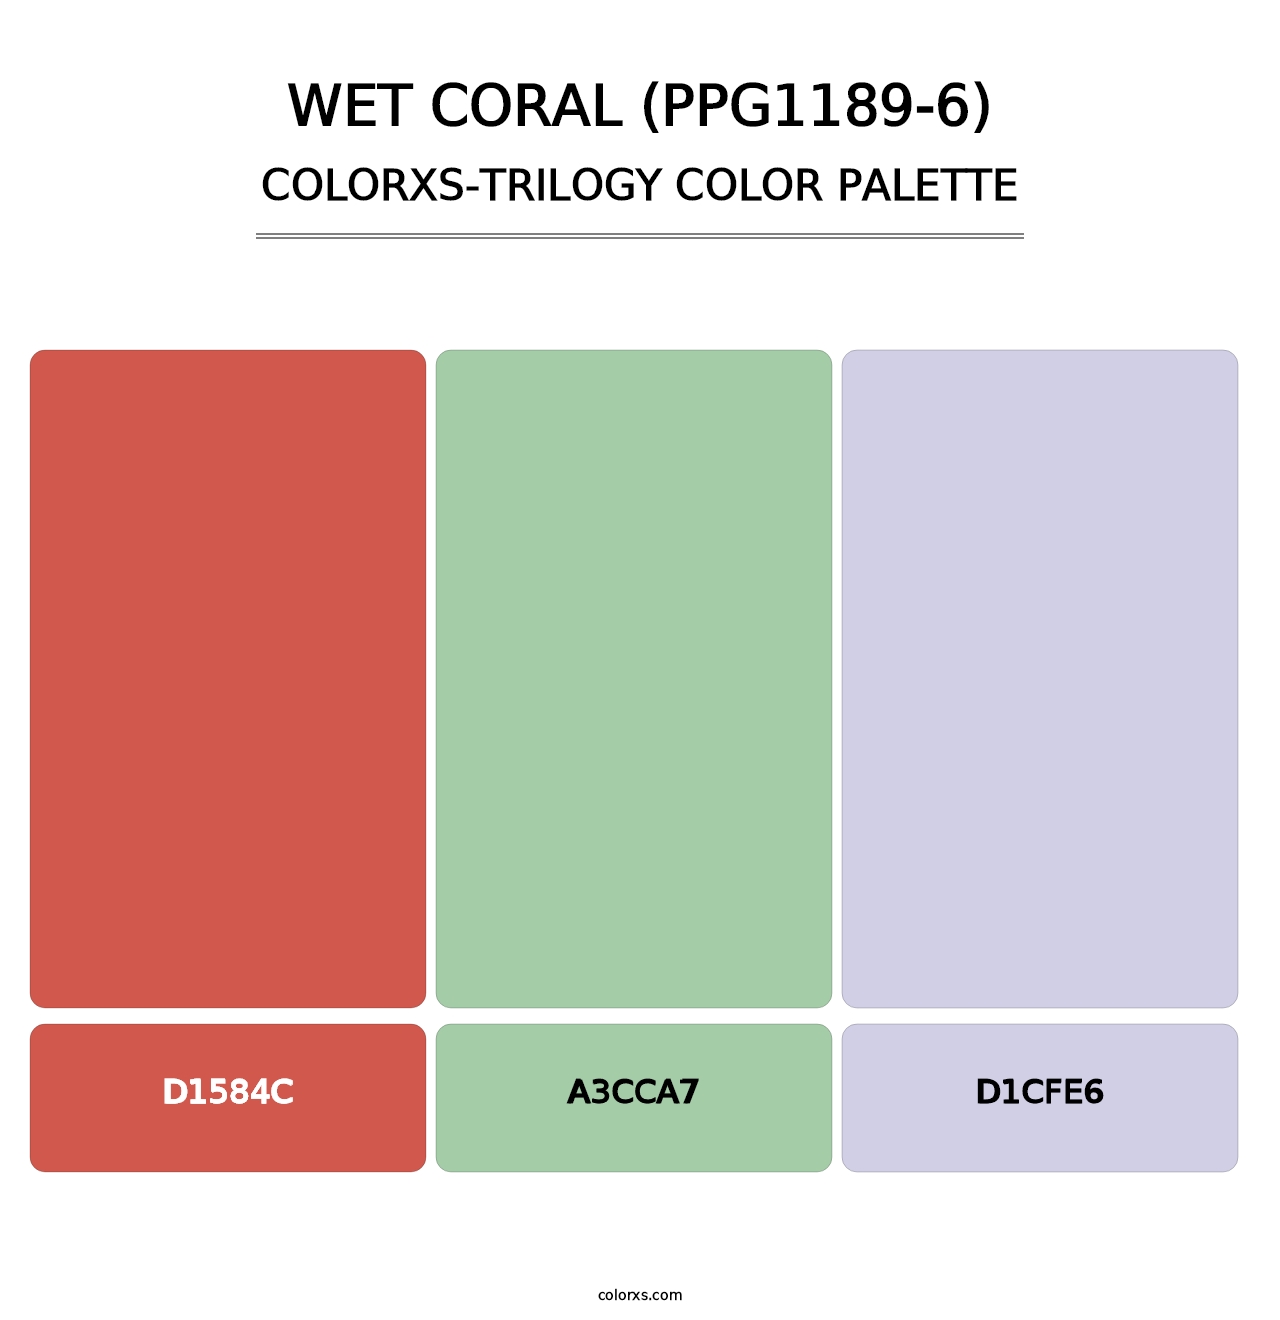 Wet Coral (PPG1189-6) - Colorxs Trilogy Palette